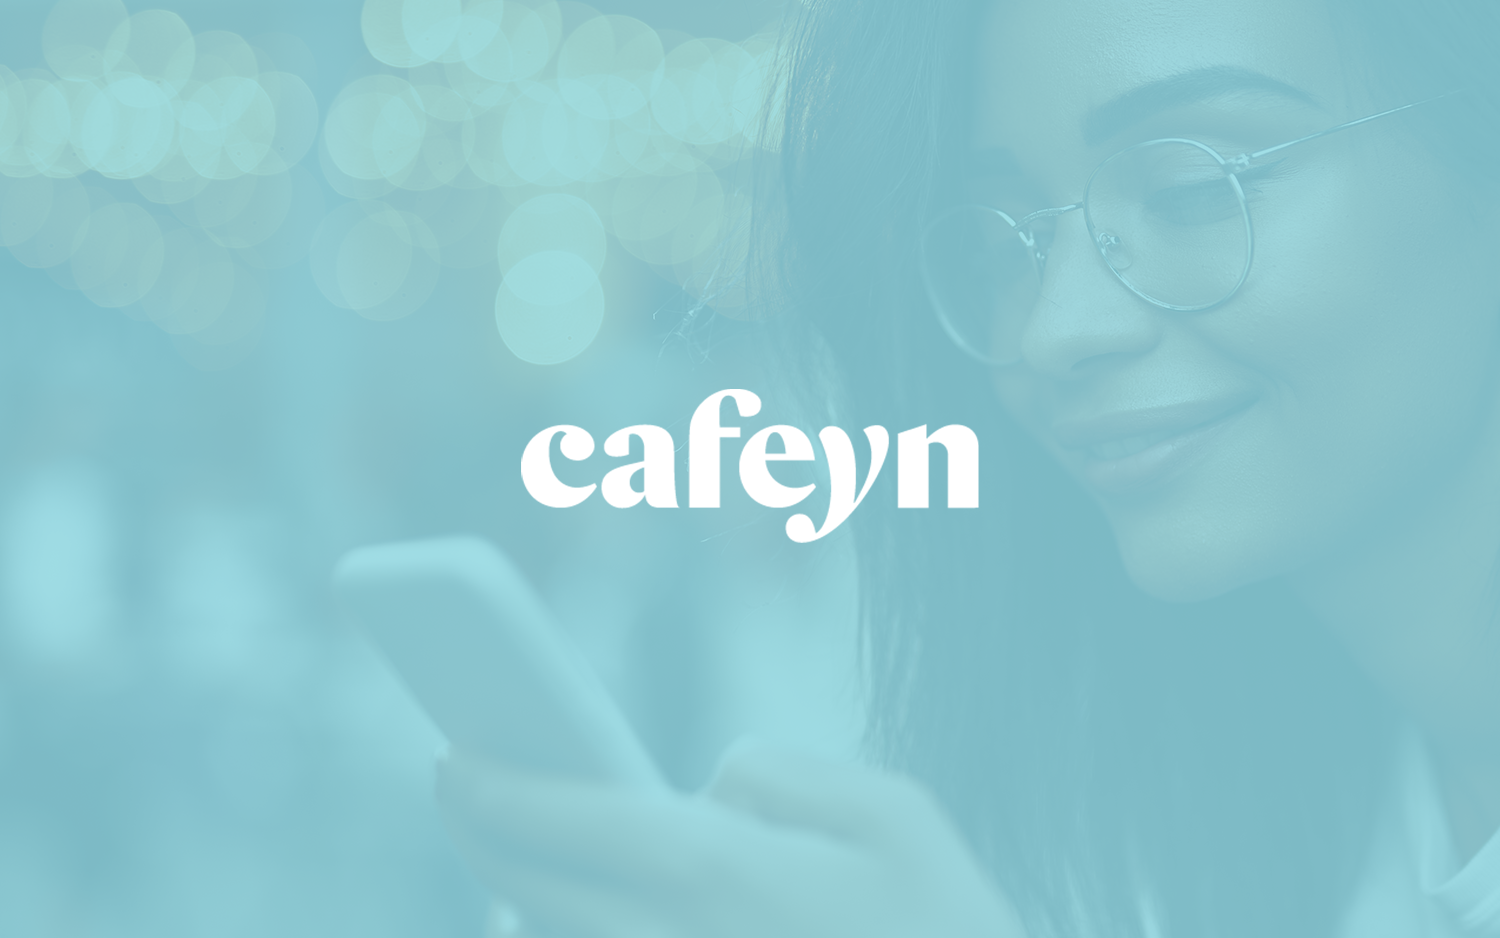 Cafeyn Customer Blog